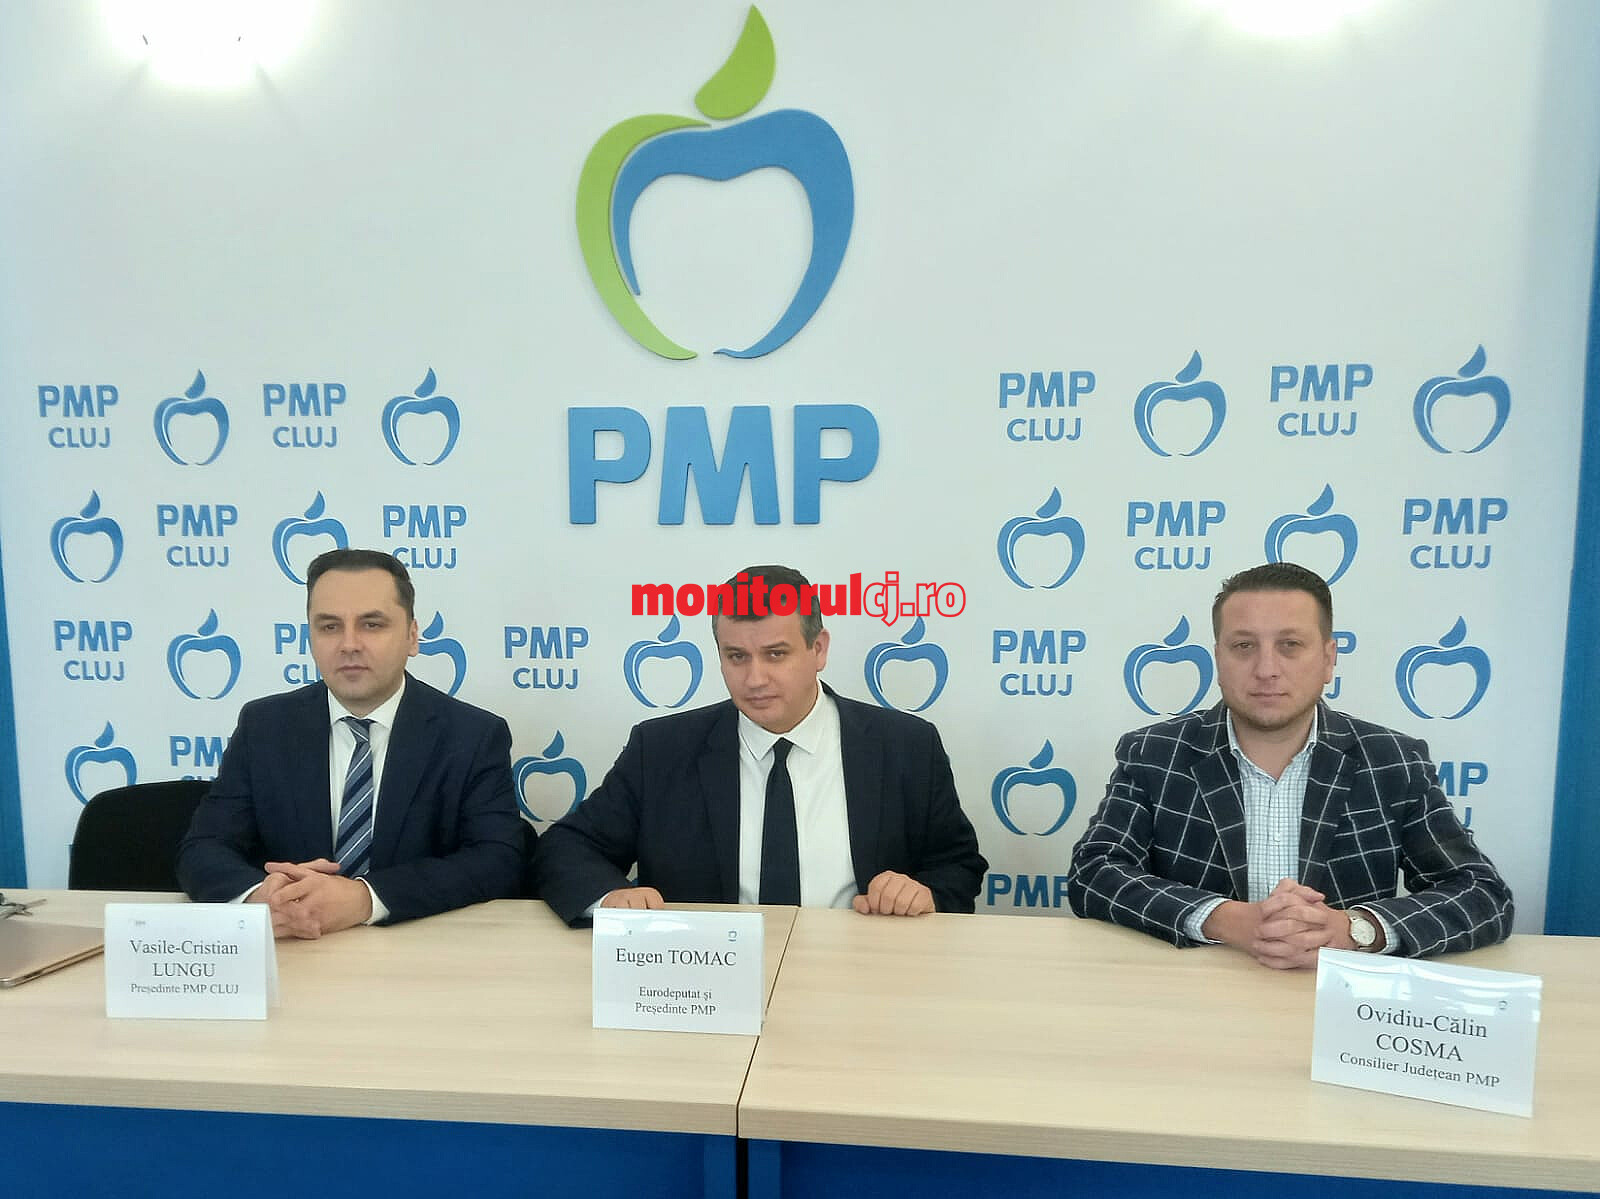 Vasile-Cristian Lungu - Președinte PMP Cluj, Eugen Tomac - Președintele PMP, Ovidiu-Călin Cosma - Consilier județean PMP. FOTO: Monitorul de Cluj